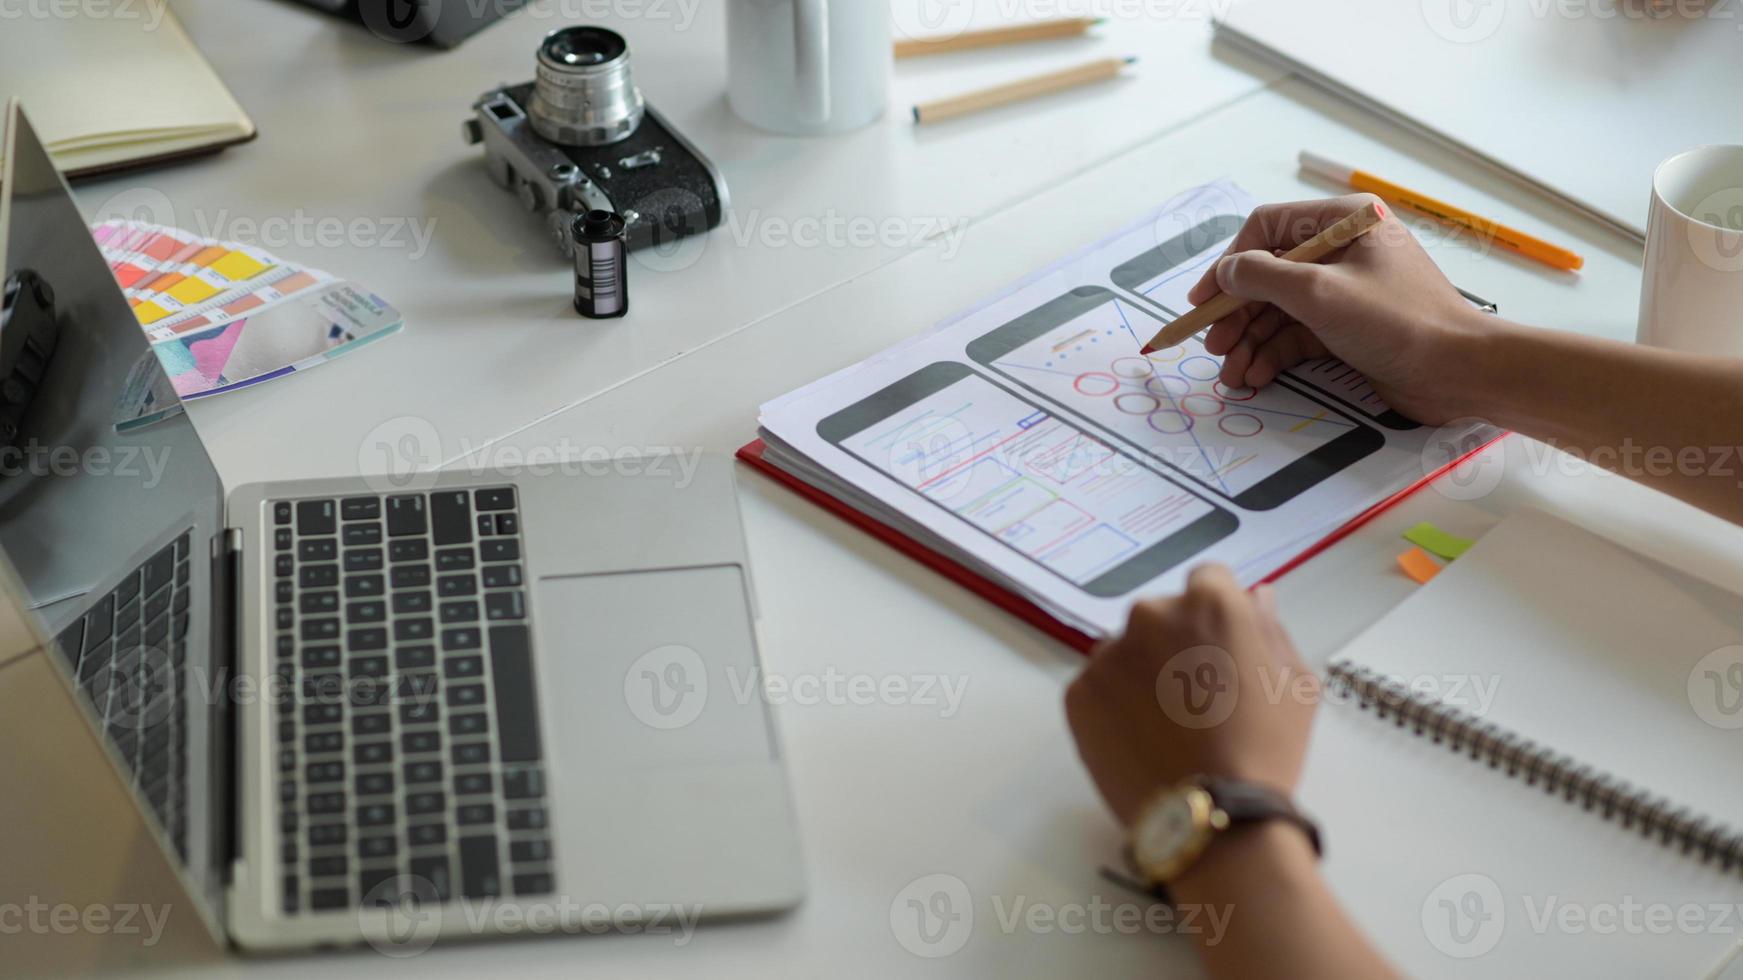 ontwerper schetst een smartphonescherm voor toekomstige klanten op het bureau met laptop en briefpapier. foto